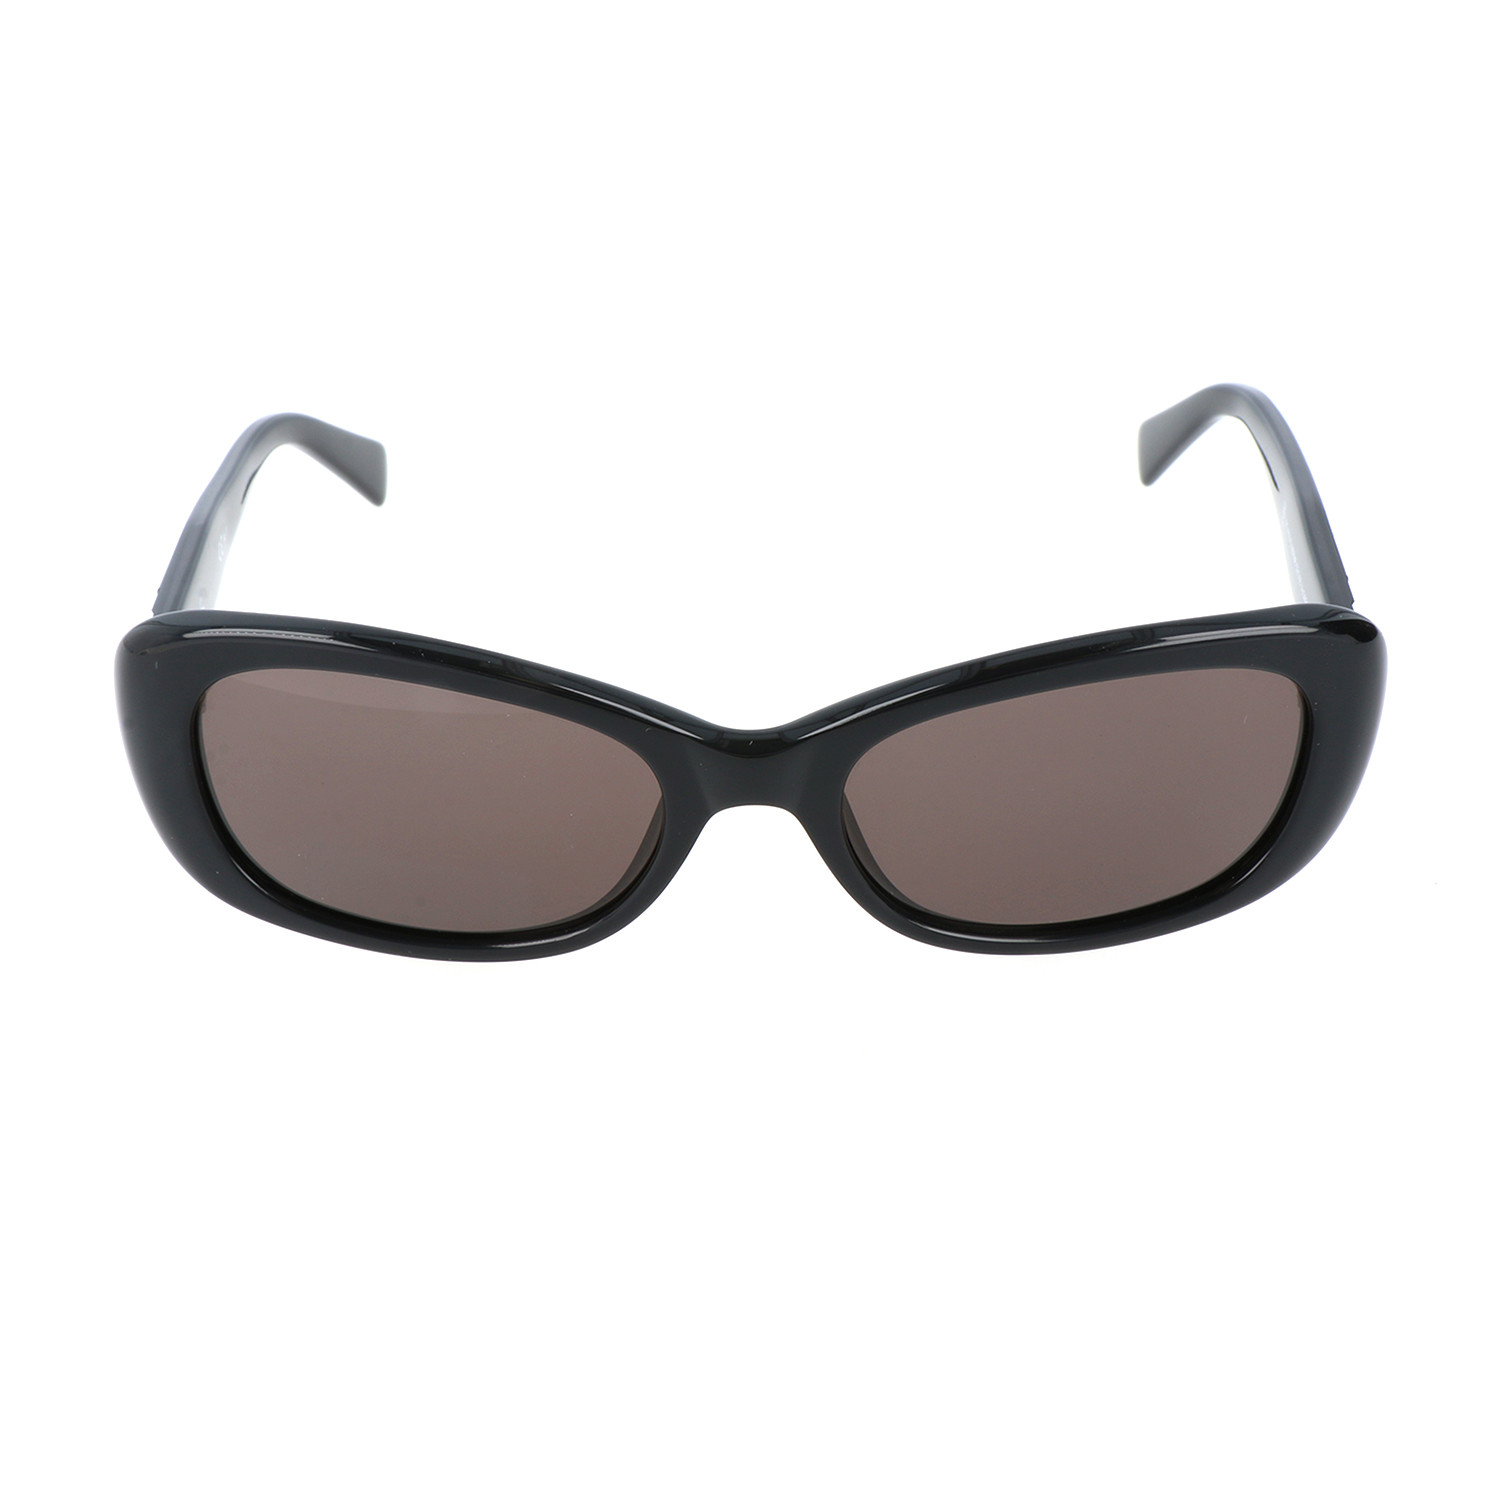 Pierre Cardin Women's Sunglasses // 8374 // Black - Pierre Cardin ...